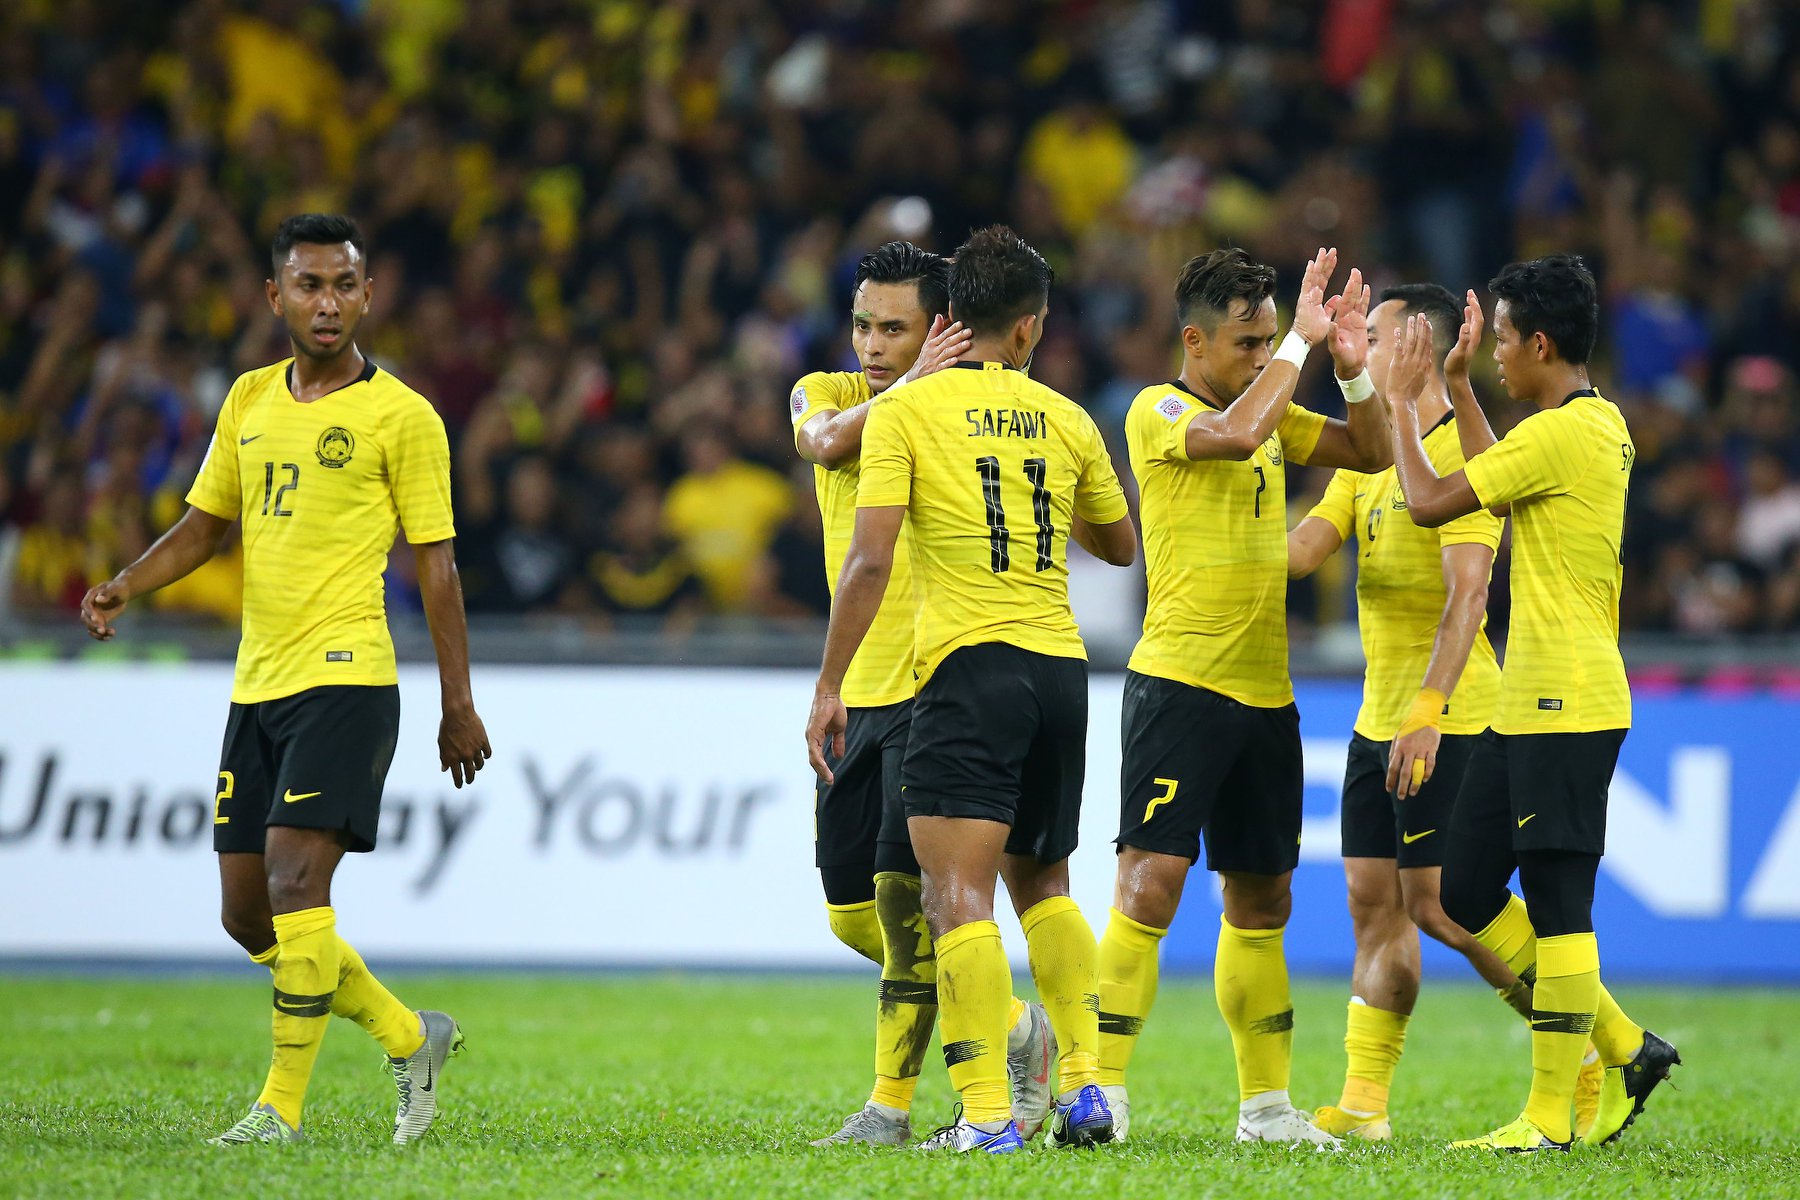 Báo Malay ví đội nhà như Barca, Chelsea chê ĐT Việt Nam chơi thực dụng - Bóng Đá